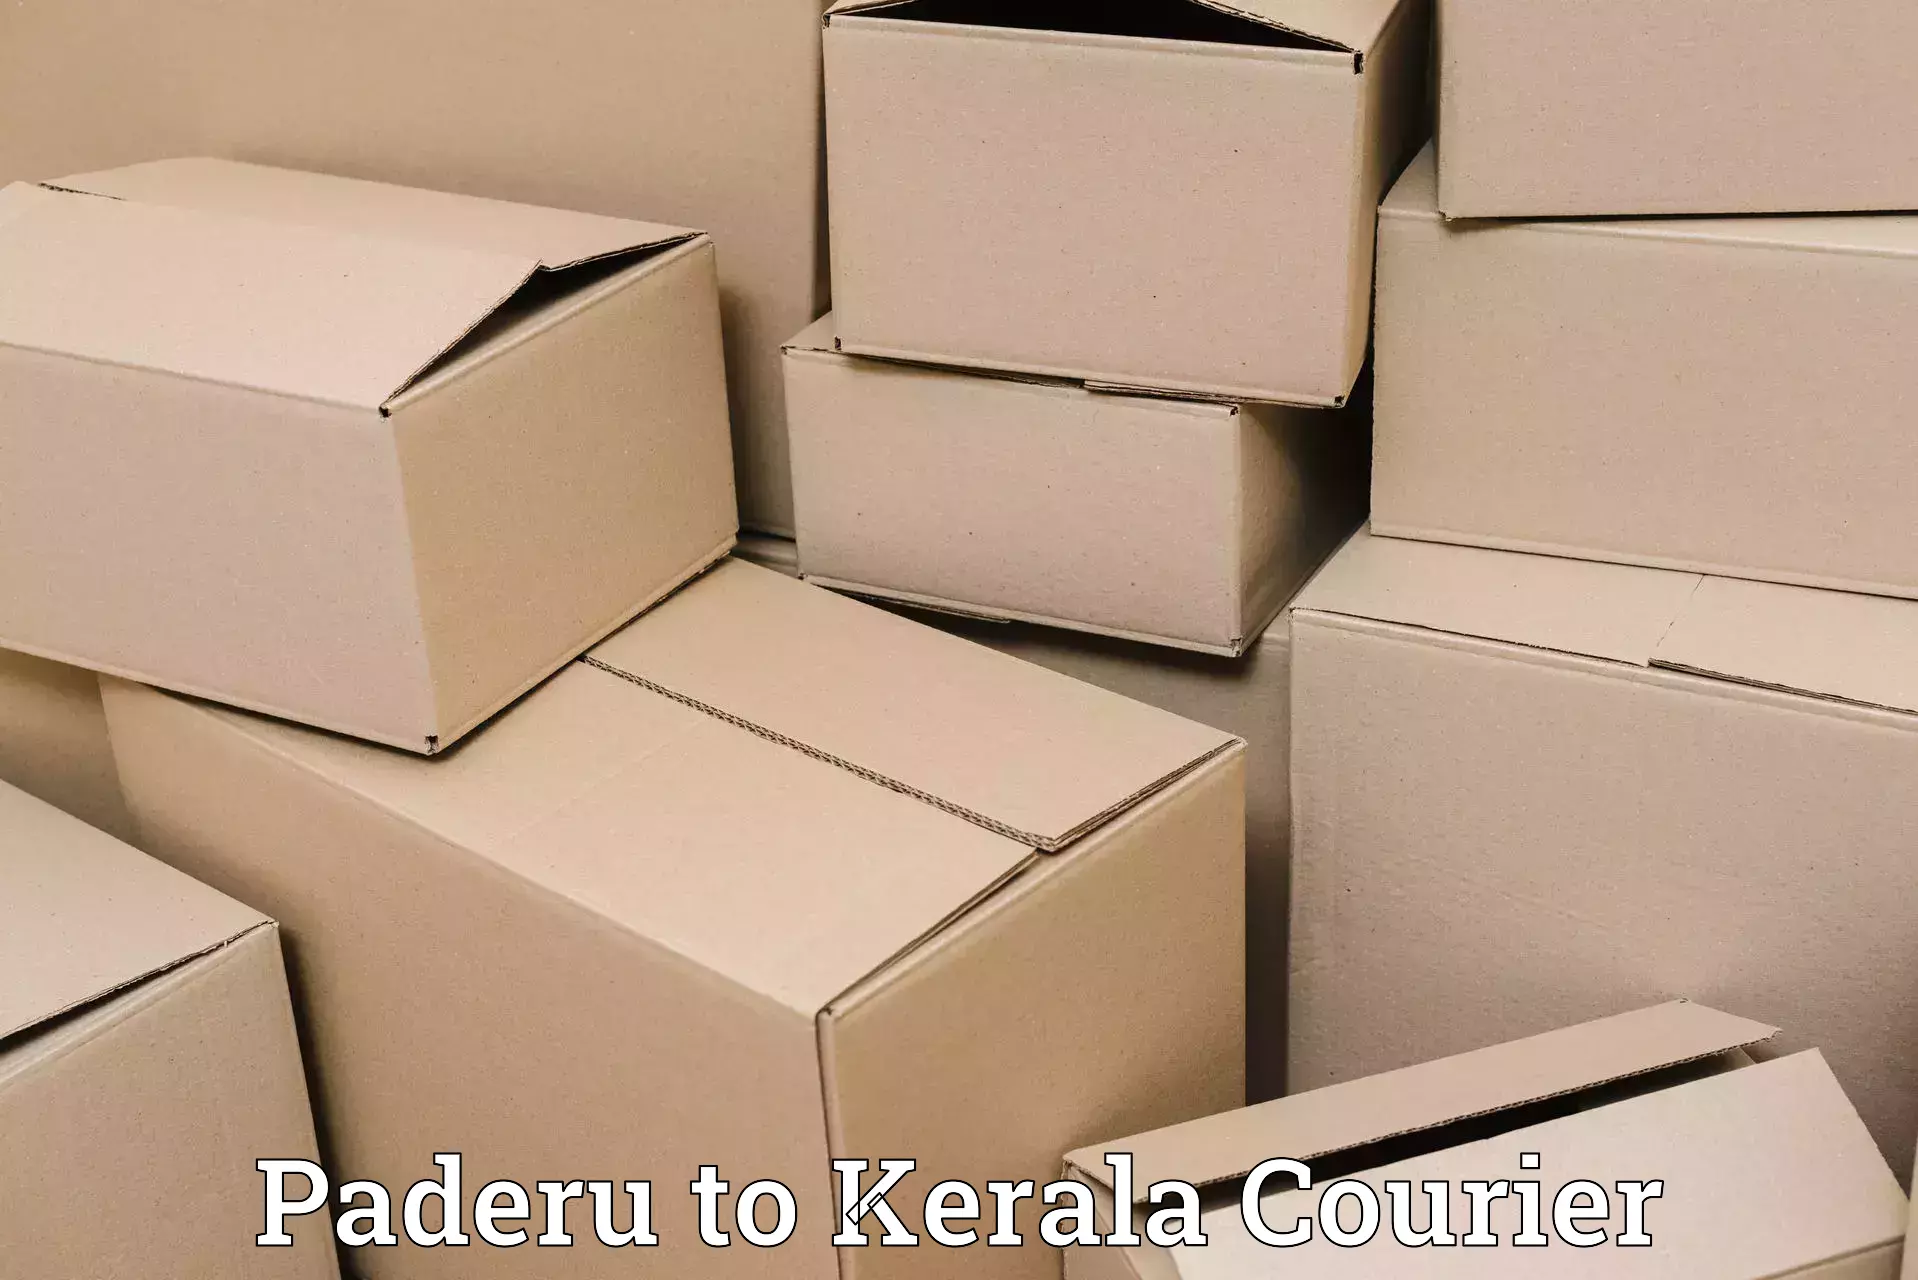 Express package transport Paderu to Kerala